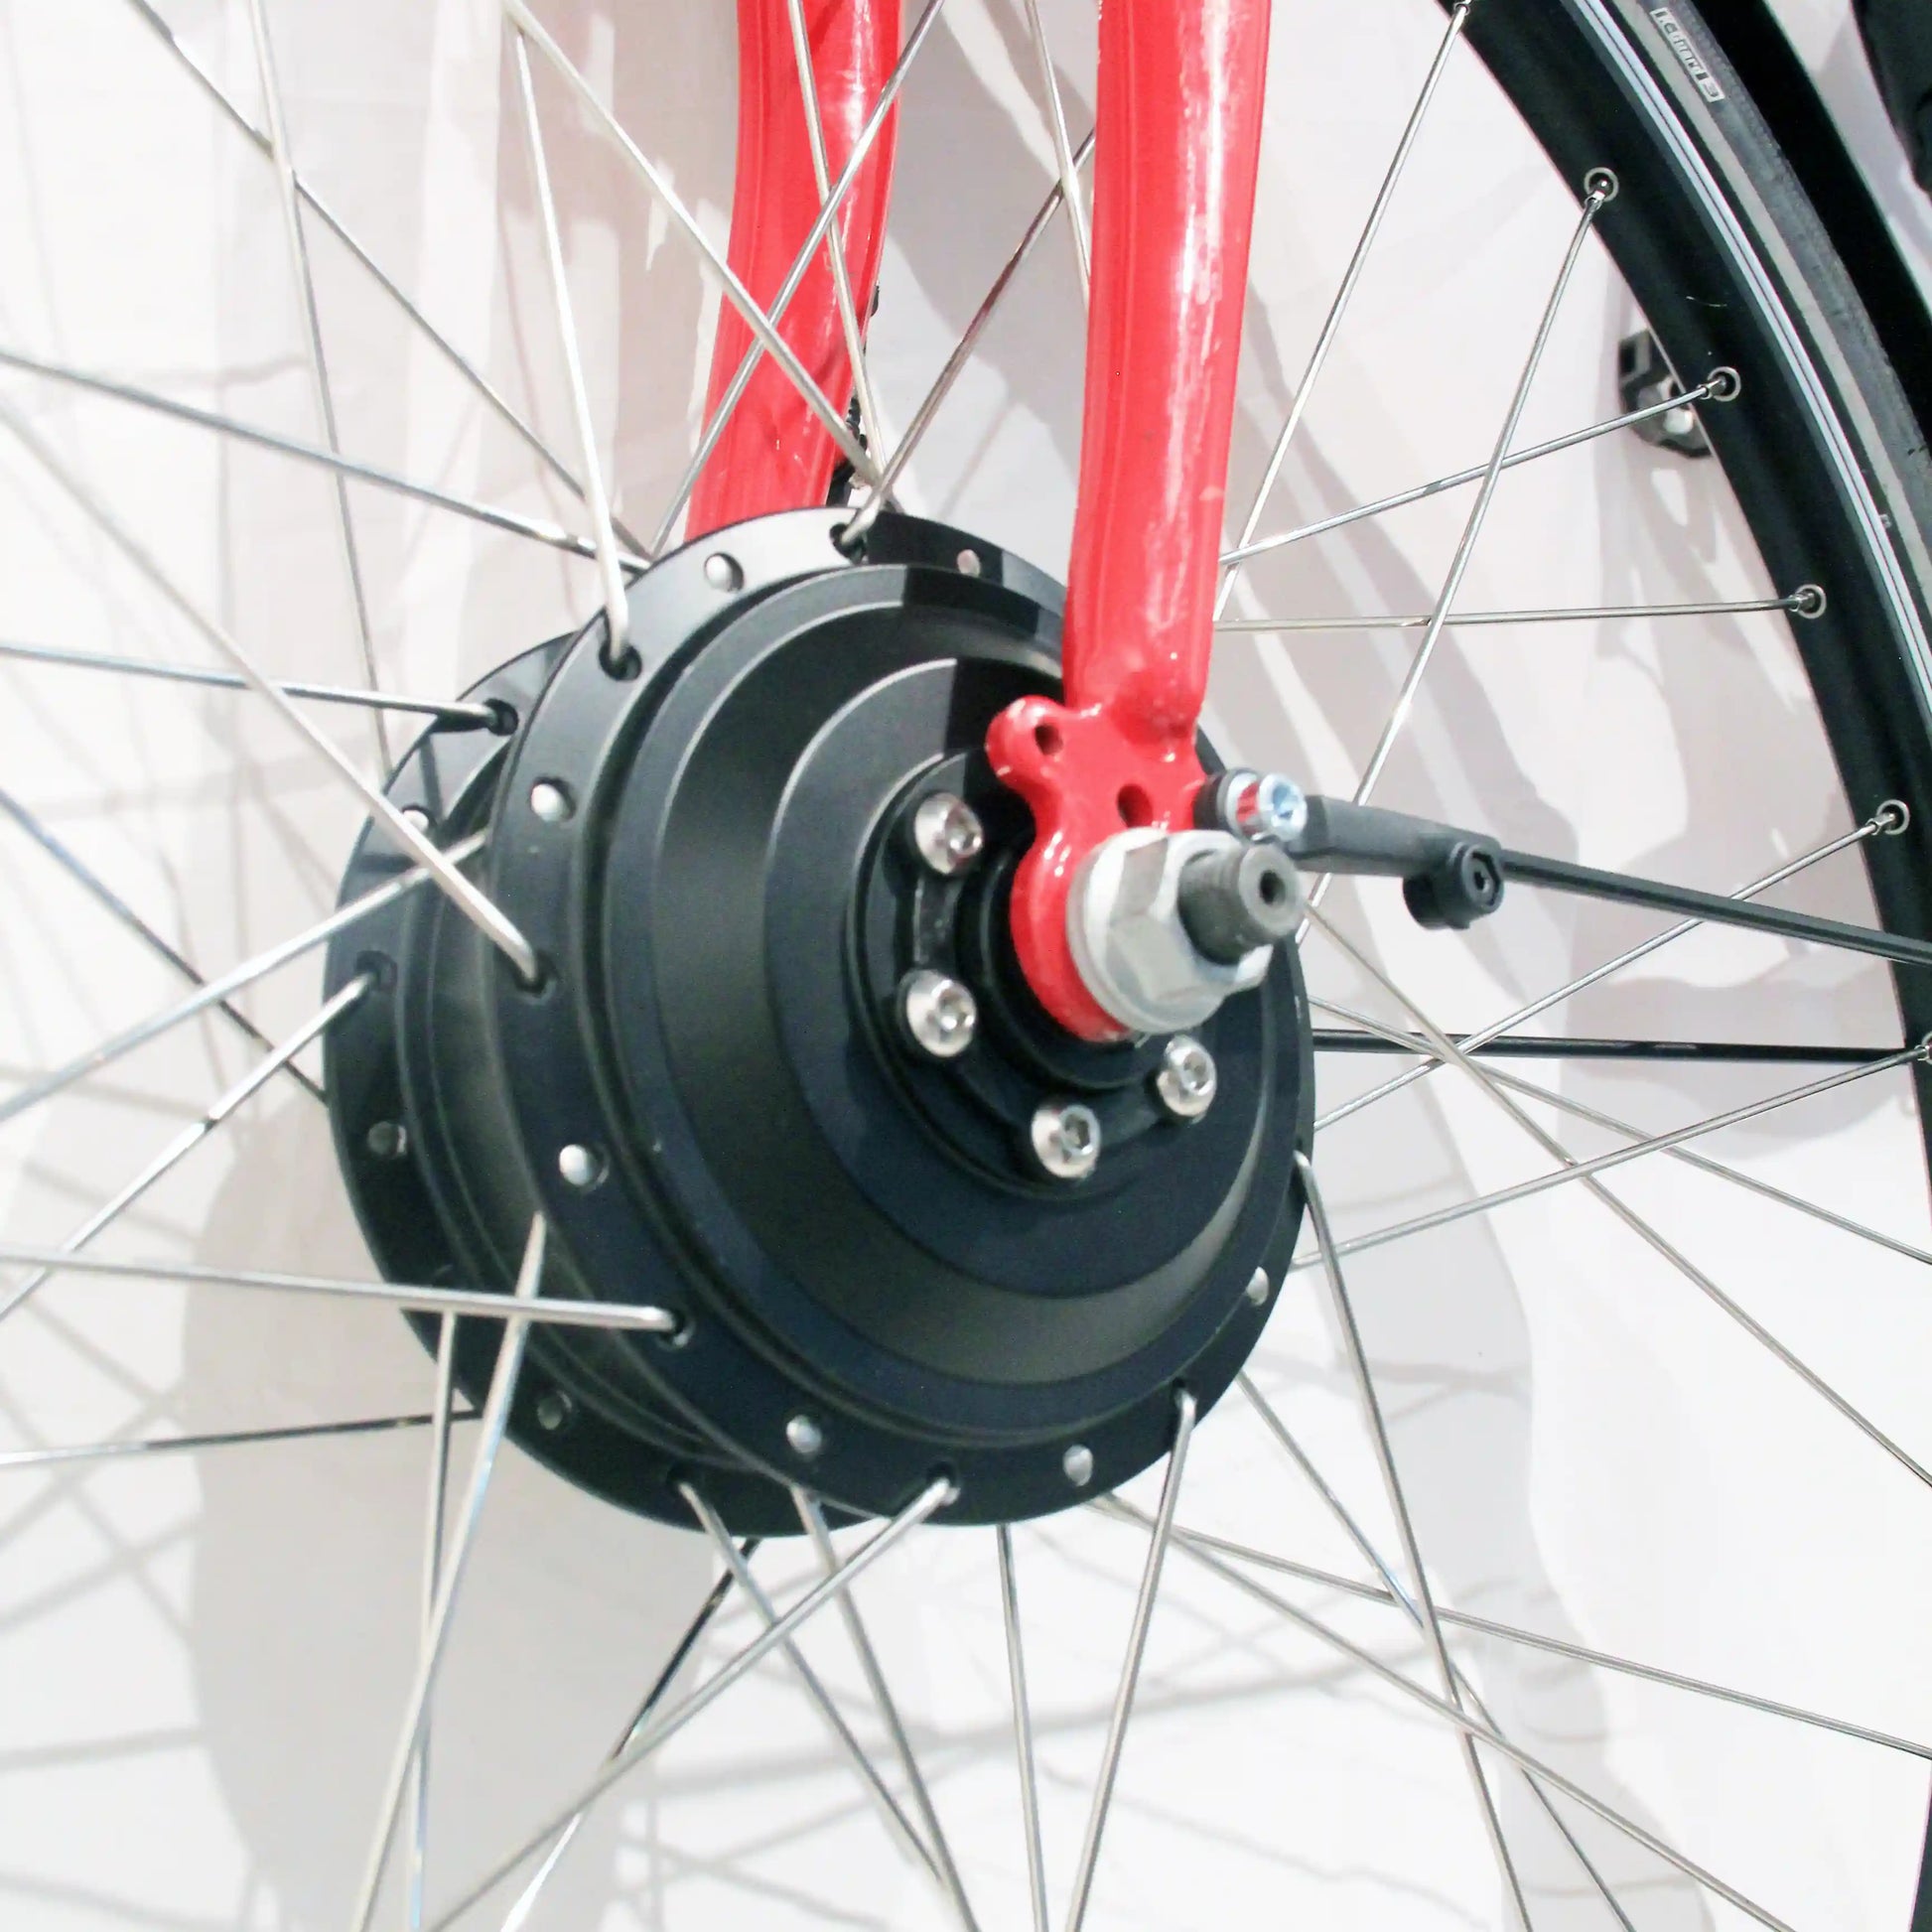 Kit de electrificación para bici urbana – Spring Bikes